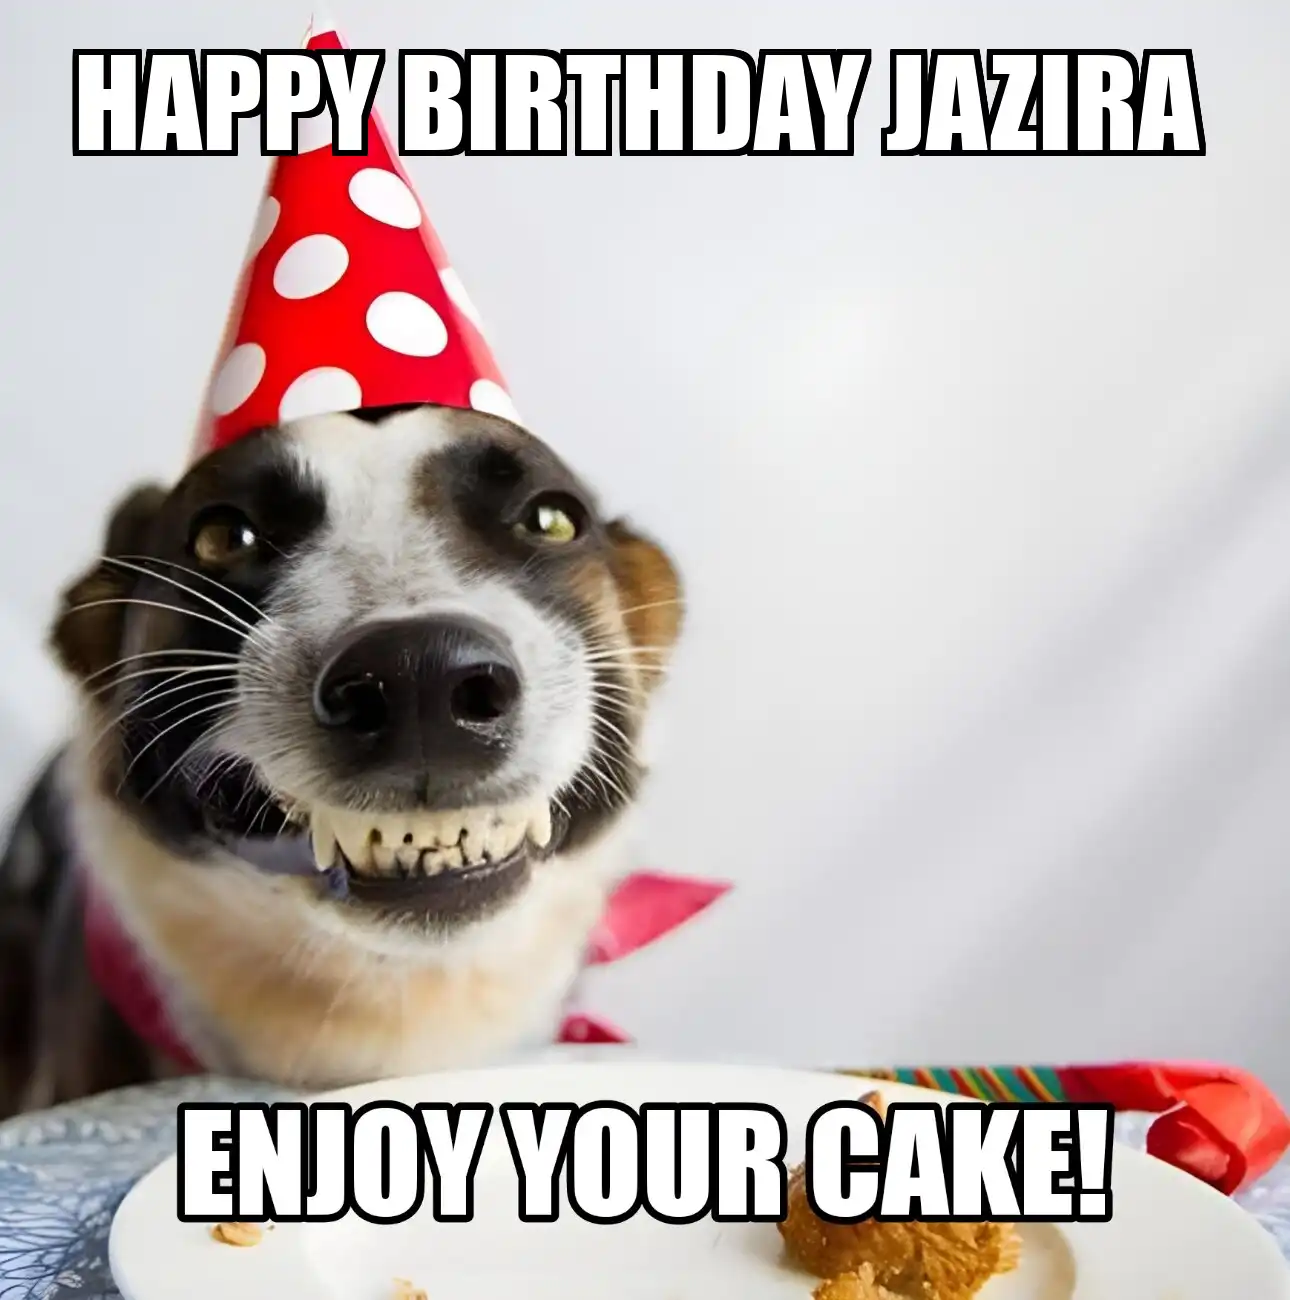 Happy Birthday Jazira Enjoy Your Cake Dog Meme